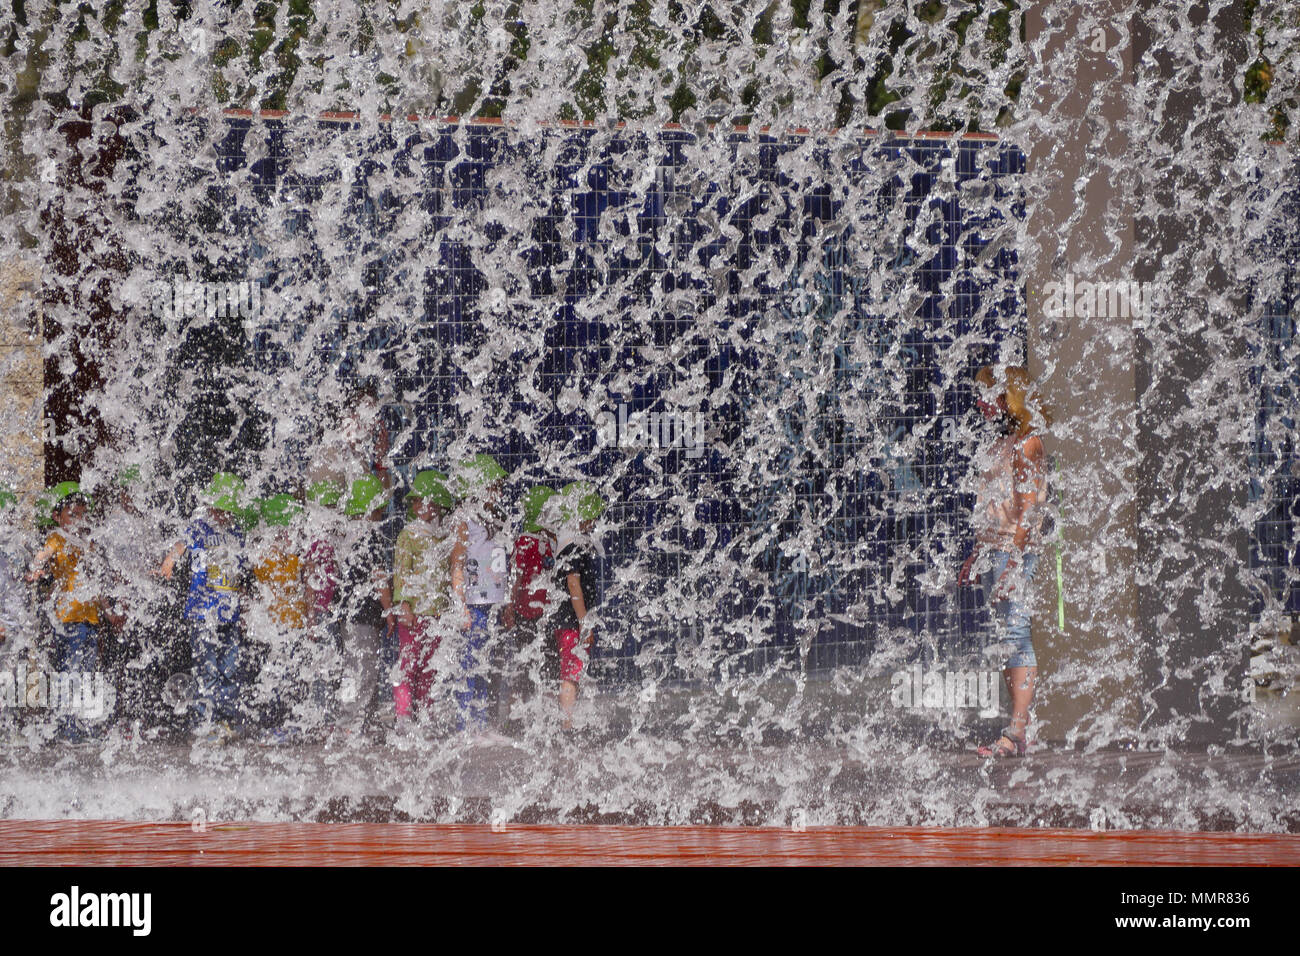 Persone in piedi dietro una cortina di acqua, nel Parco delle Nazioni district, Lisbona, Portogallo Foto Stock